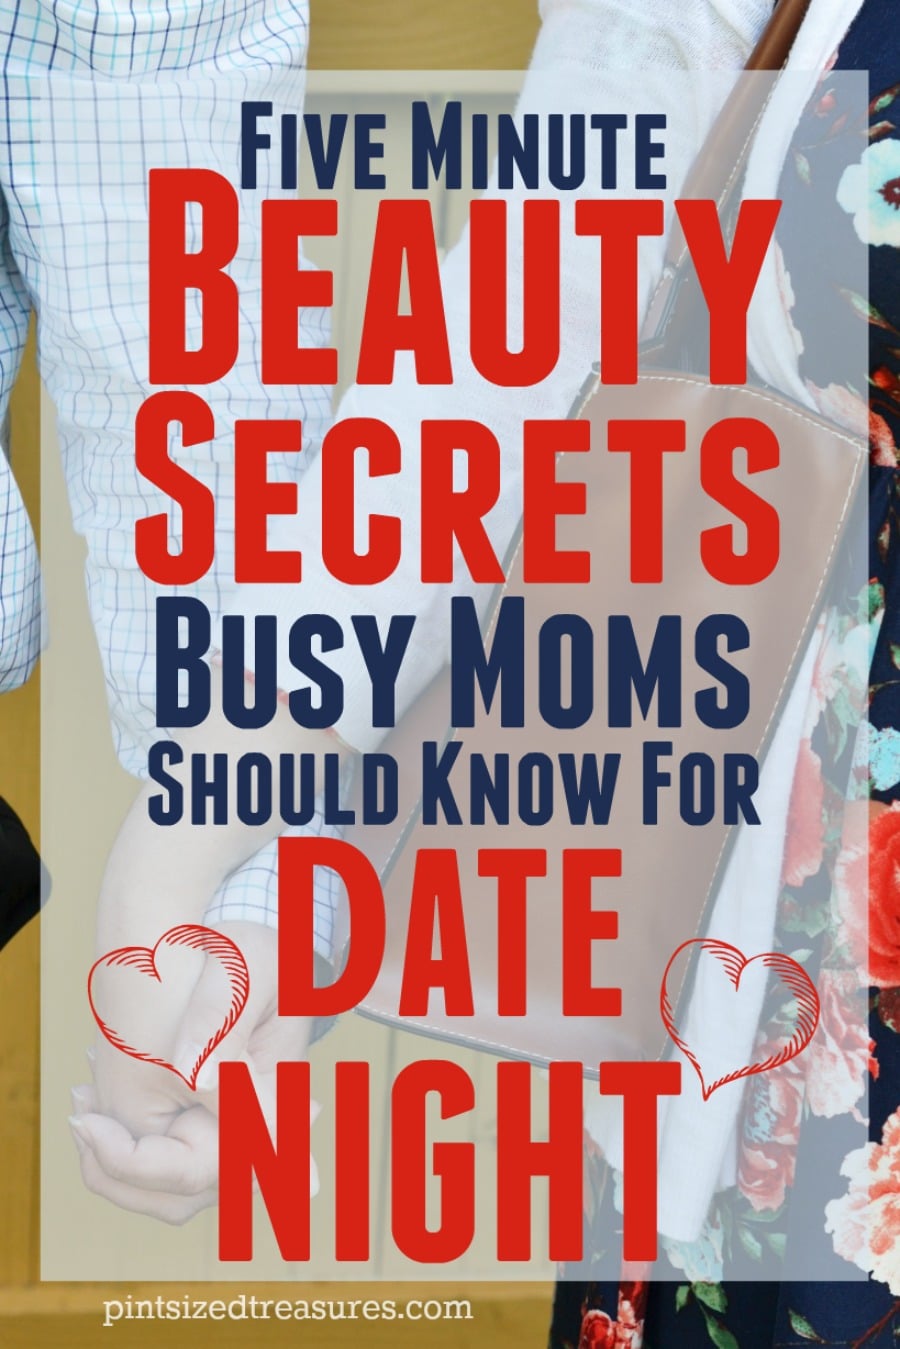 five minute beauty secrets for date night